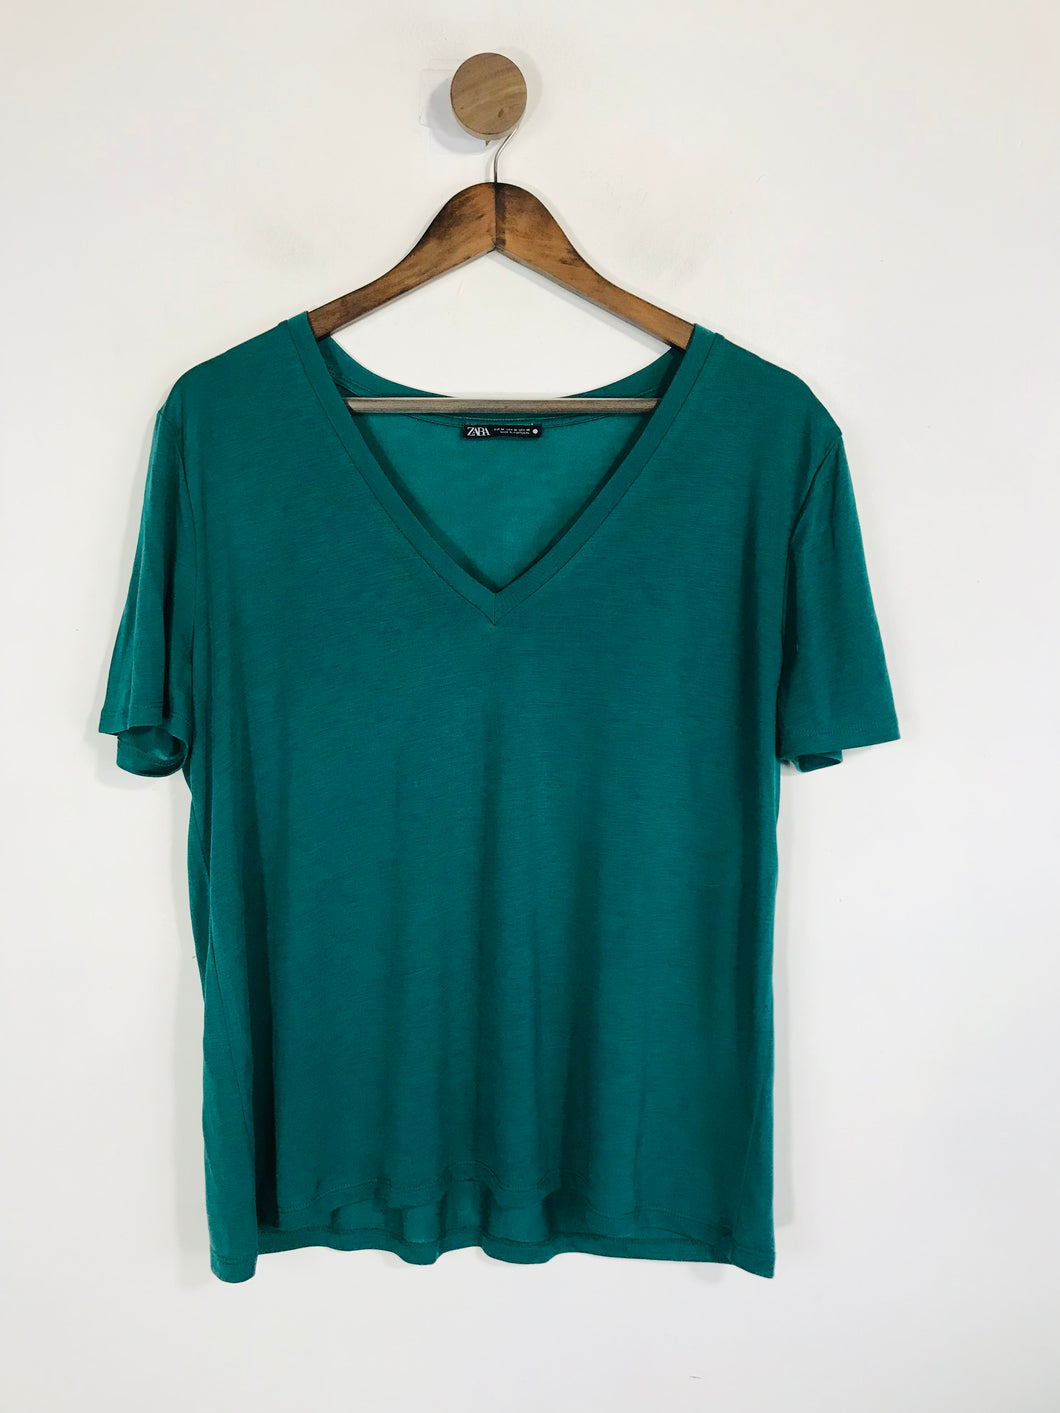 Zara Women's V-Neck T-Shirt | M UK10-12 | Green